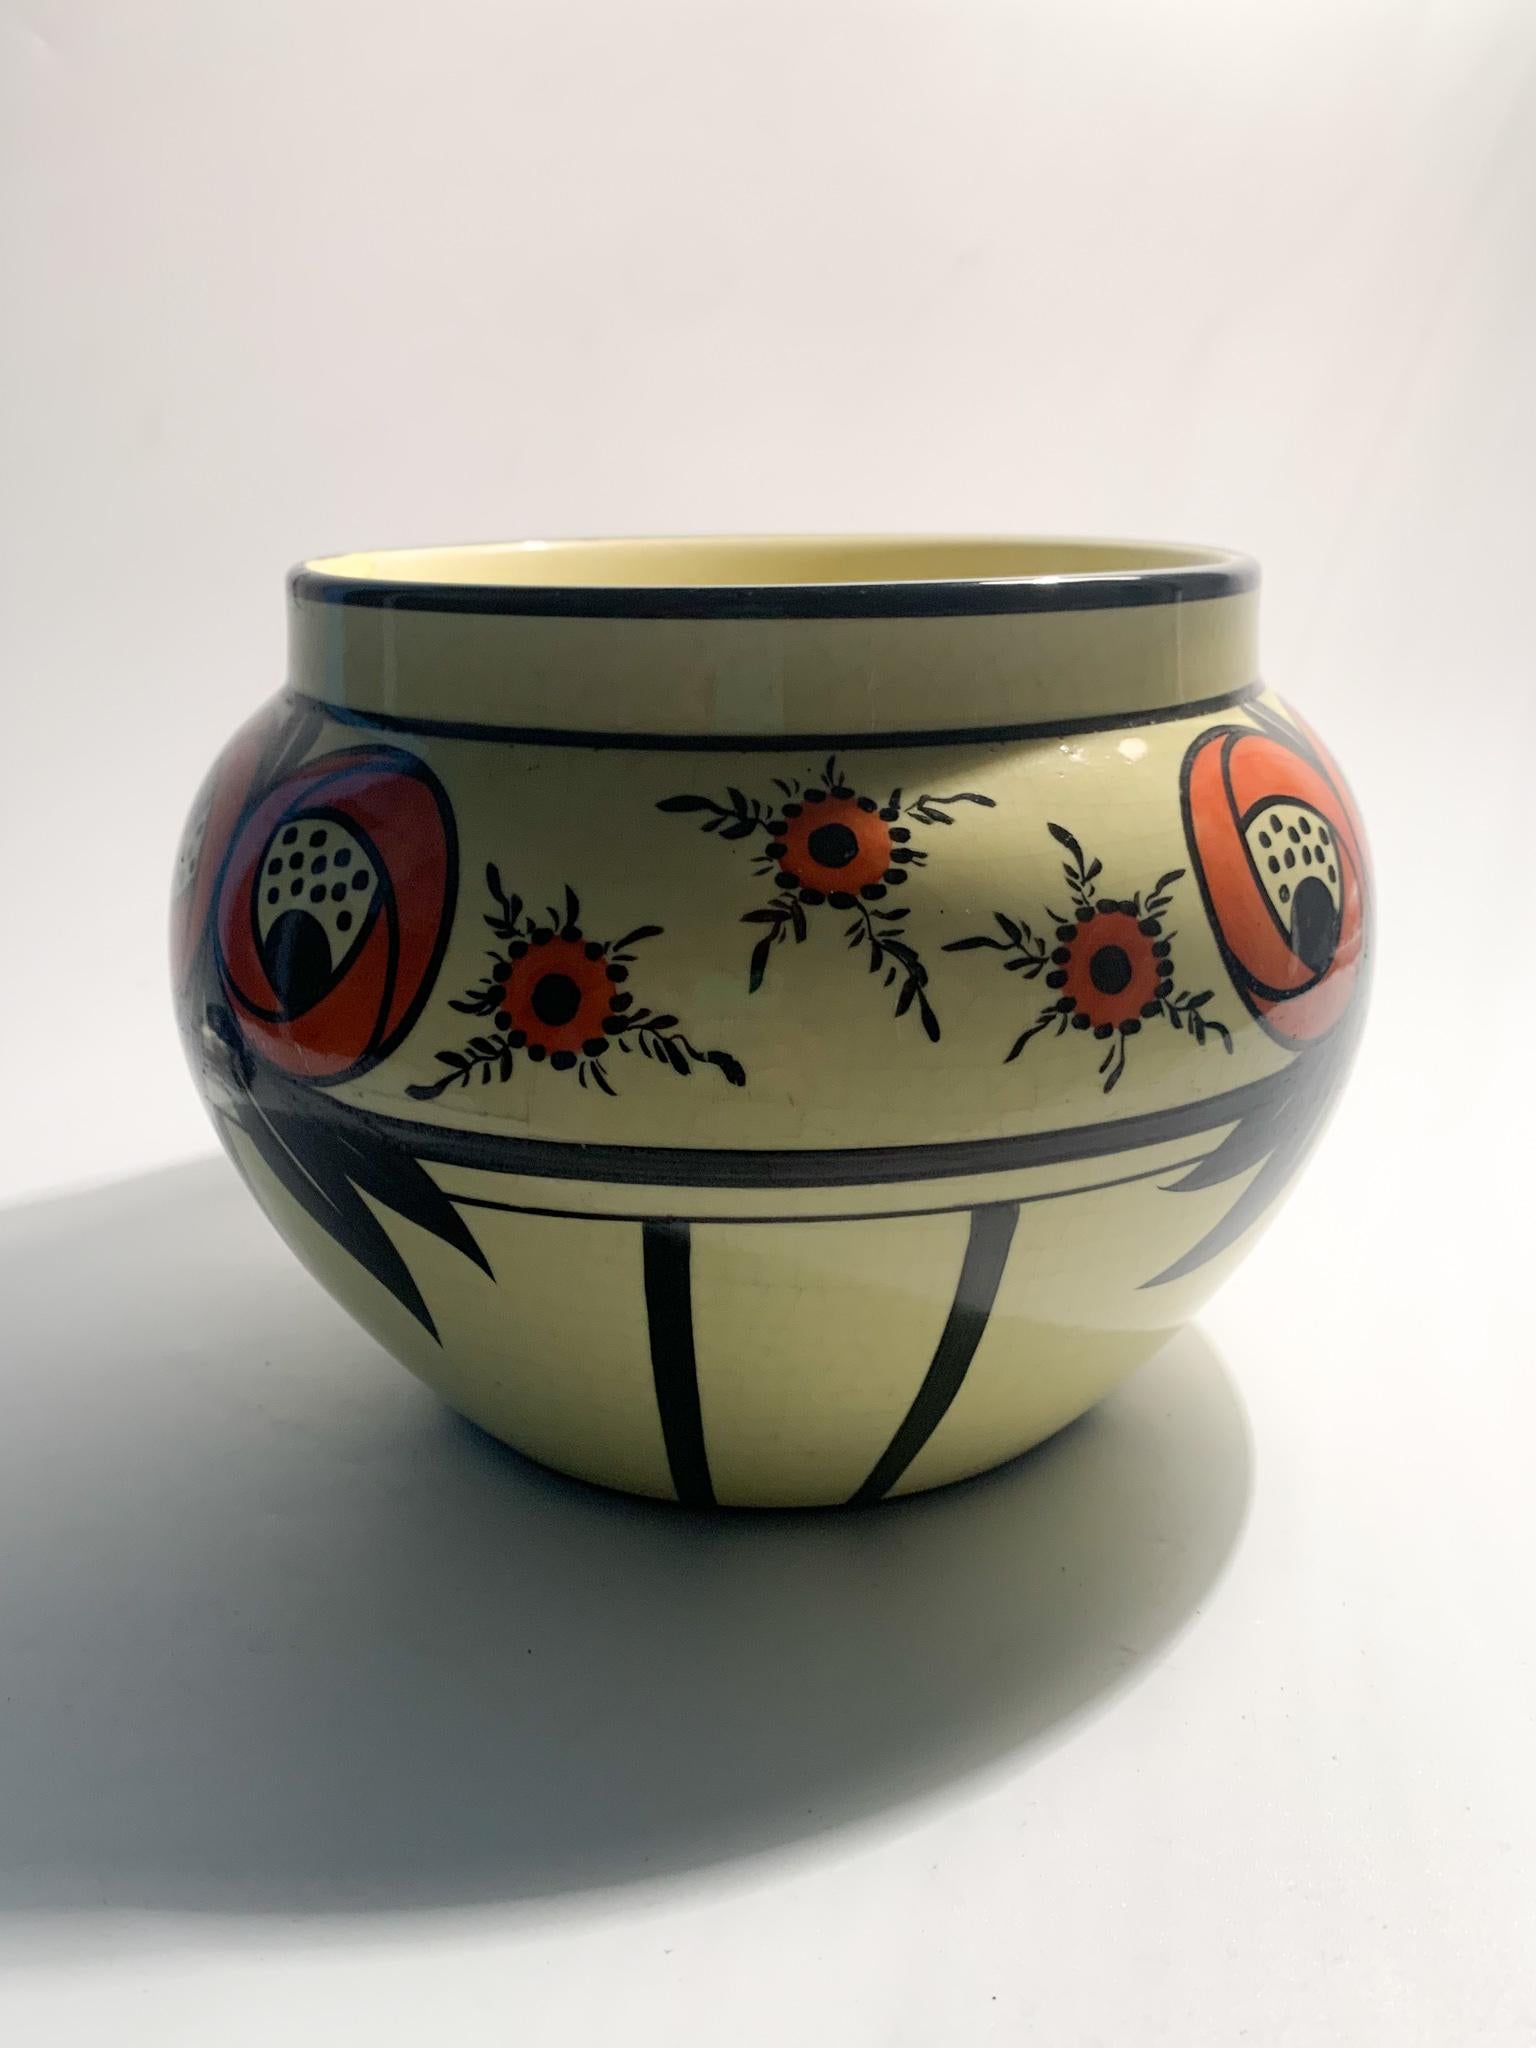 Gelbe und orangefarbene Keramikvase / Übertopf von SC Richard aus den 1890er Jahren. Die Vase hat eine leichte Reparatur, wie auf den Fotos zu sehen ist. Zusätzliches Fotomaterial auf Anfrage.

Durchmesser cm 21 h cm 16